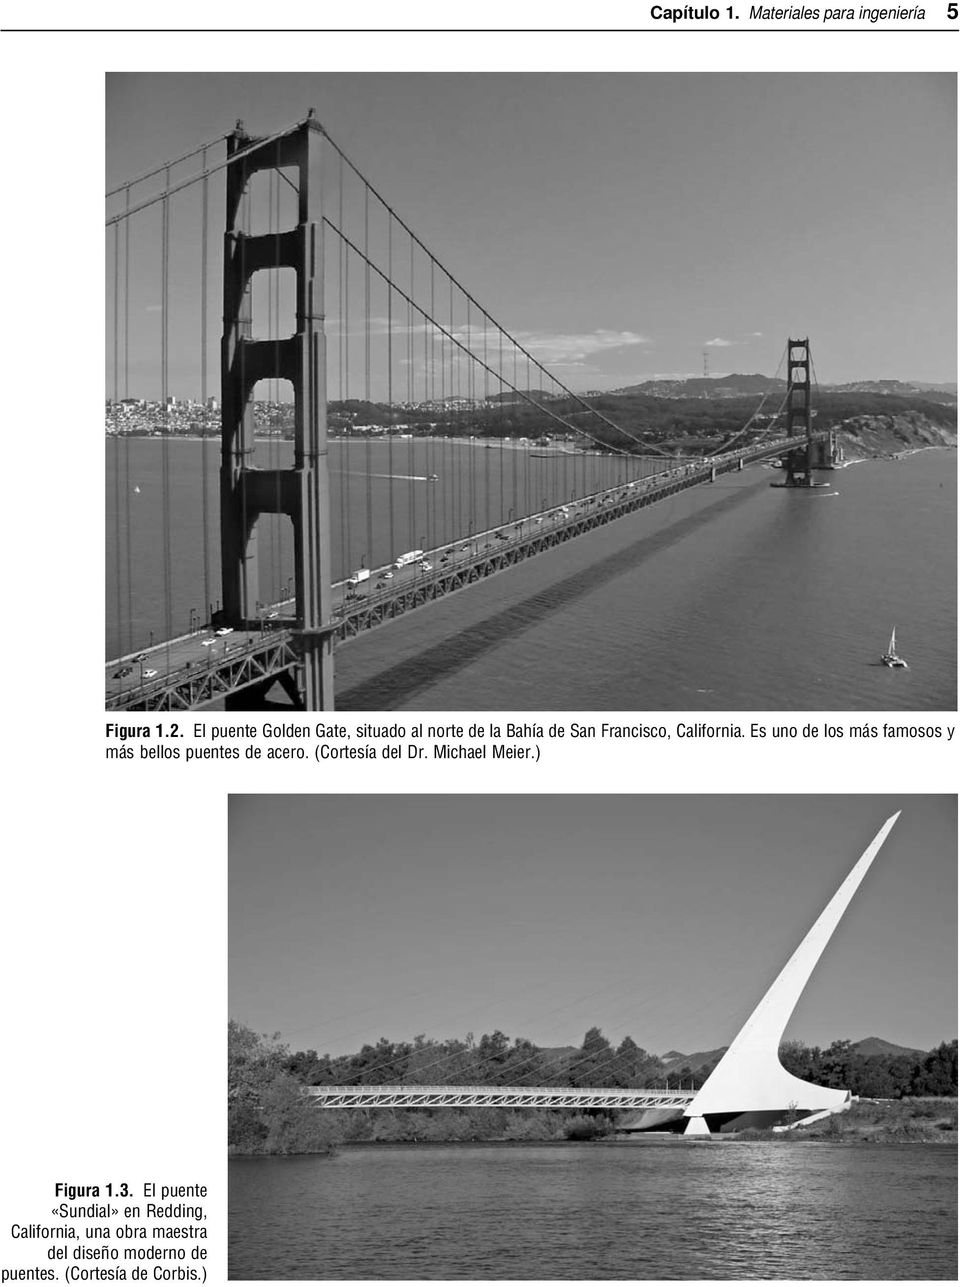 Es uno de los más famosos y más bellos puentes de acero. (Cortesía del Dr.